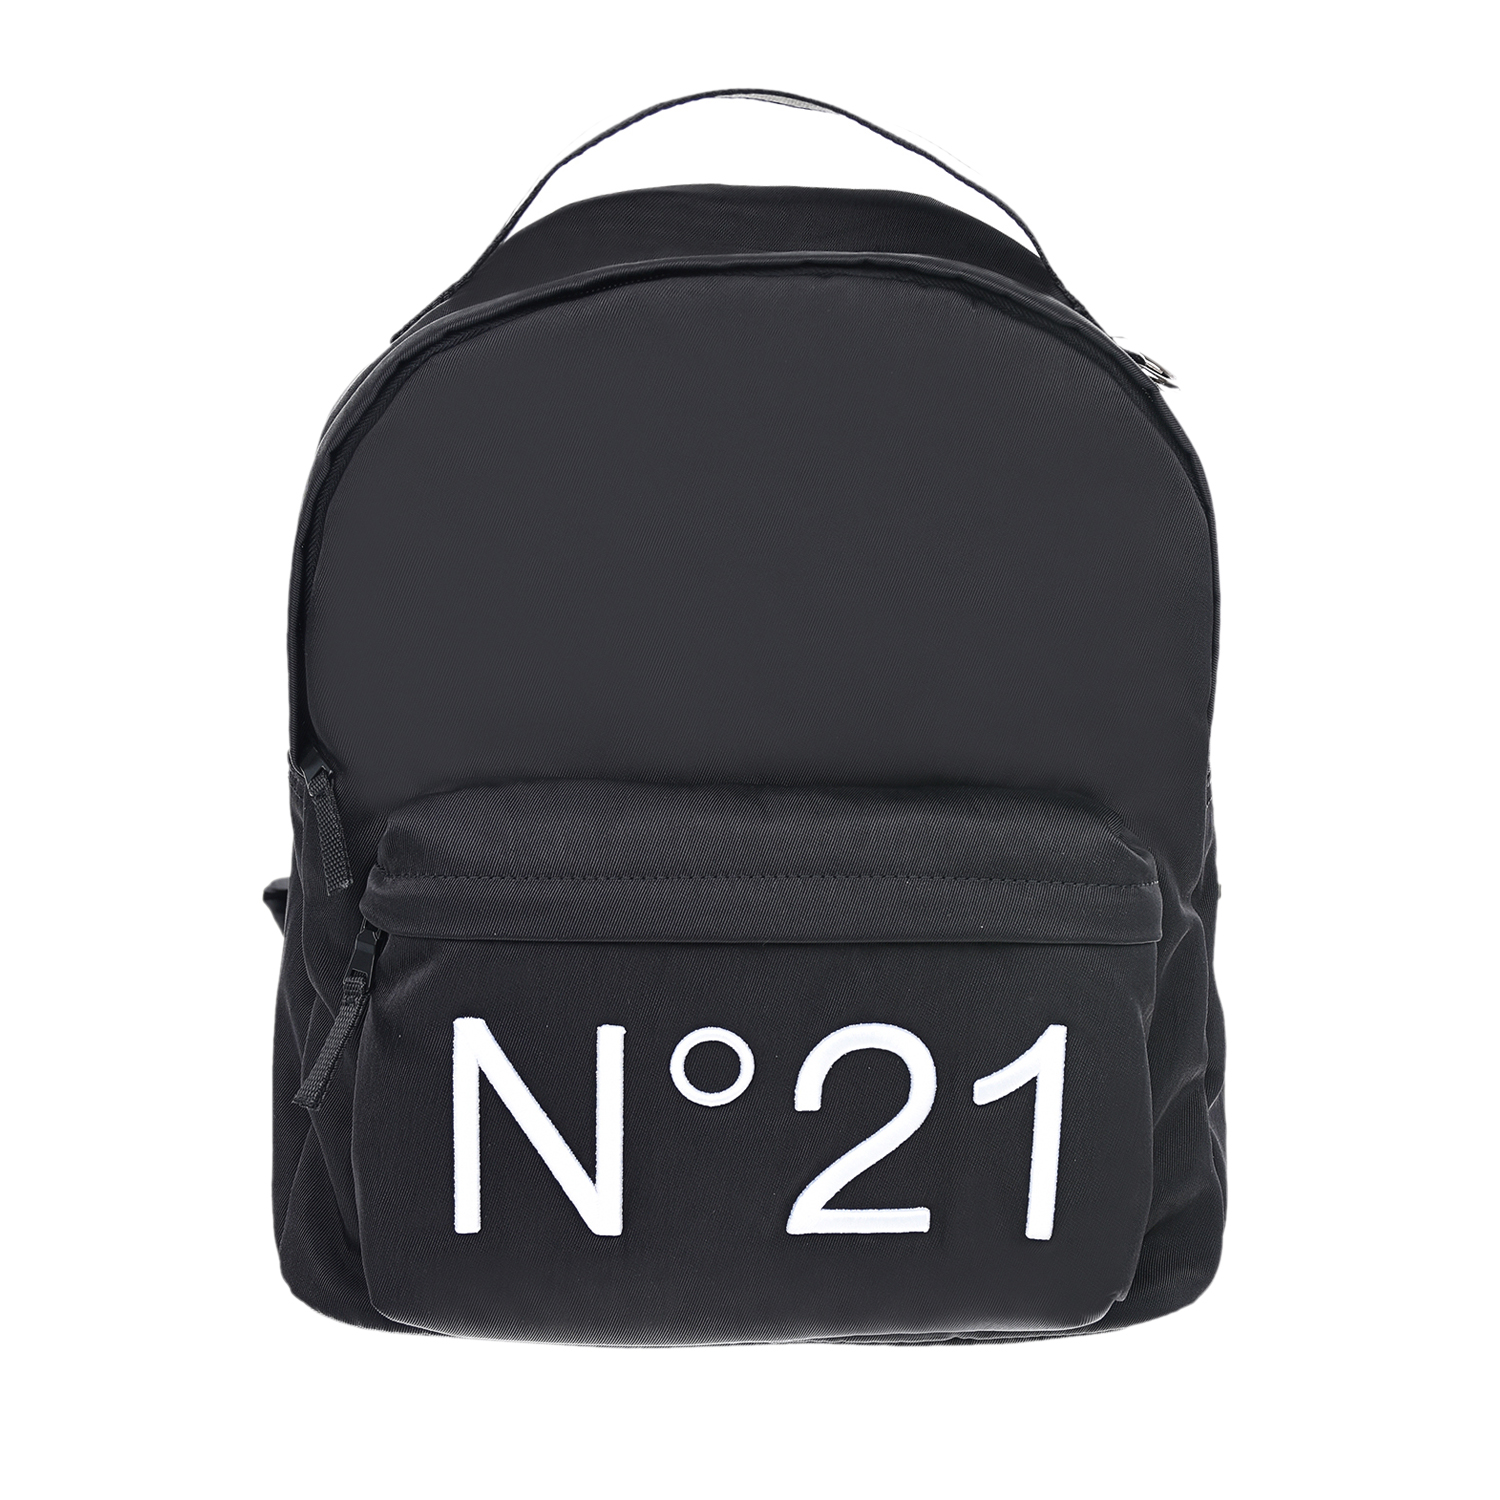 Черный рюкзак с контрастным логотипом, 30х16х36 см No. 21 детский, размер unica